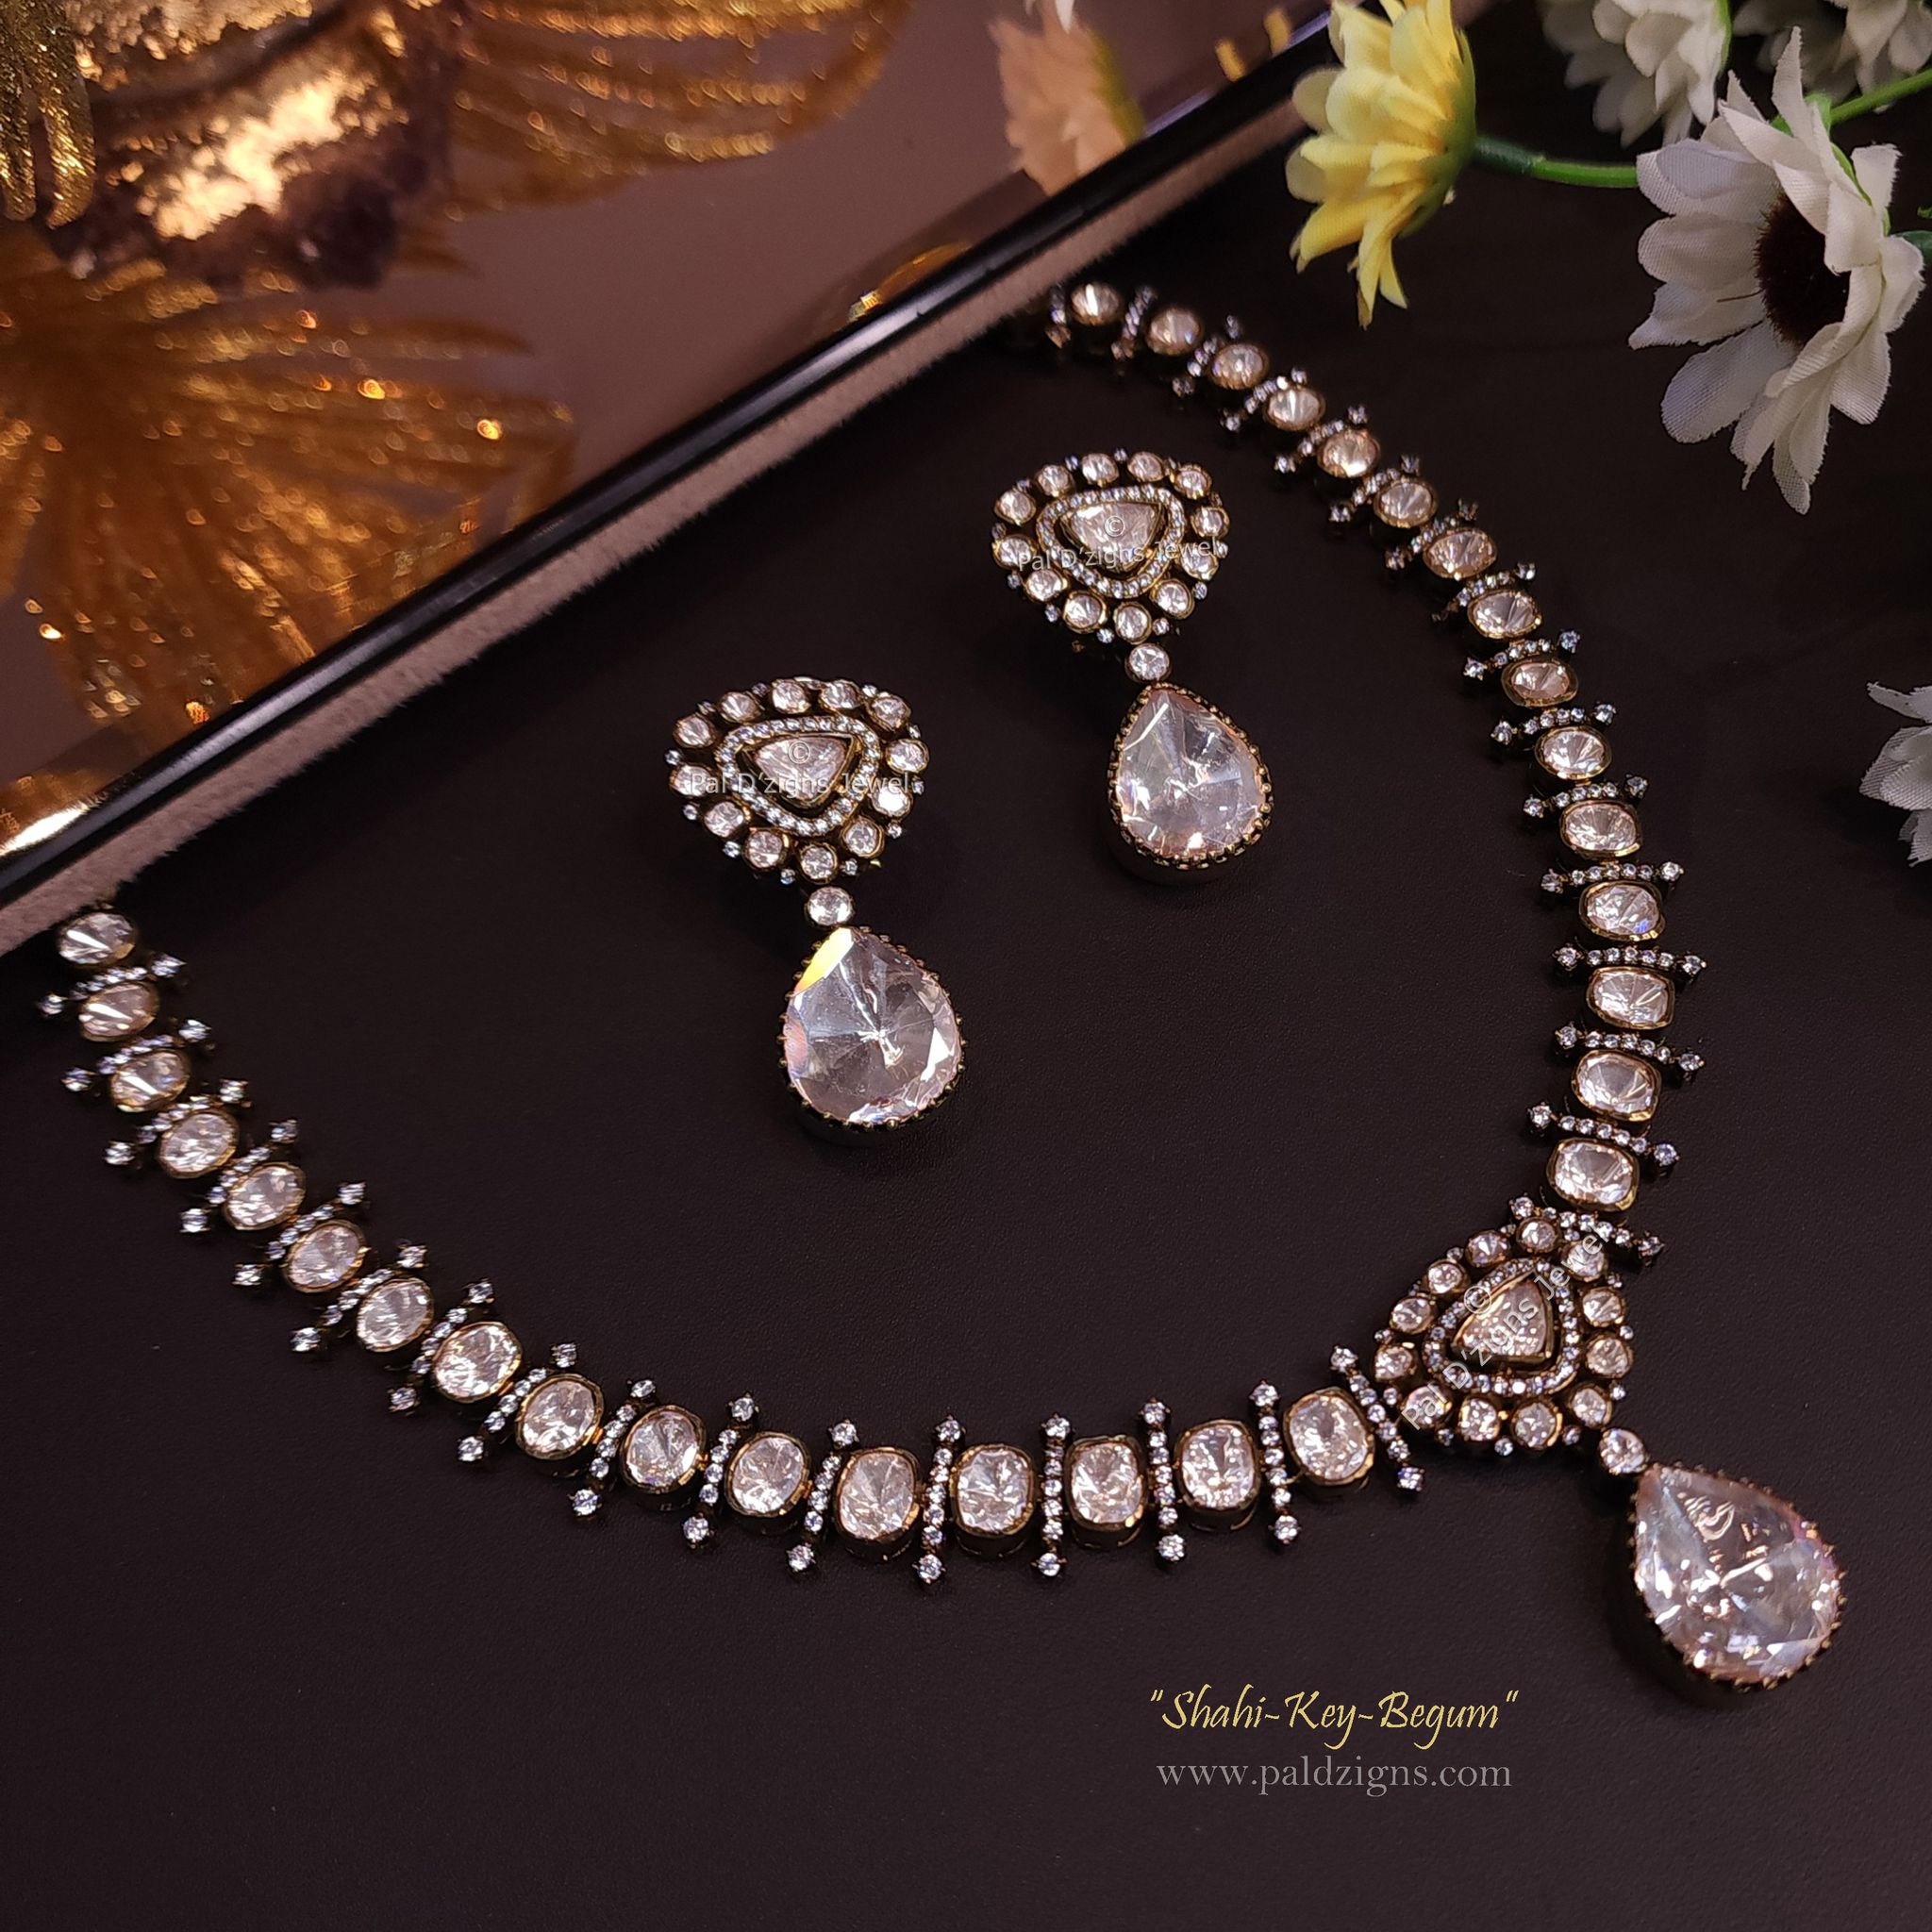 Shahi-Key-Begum Antique- Moissanite Polki Necklace Set